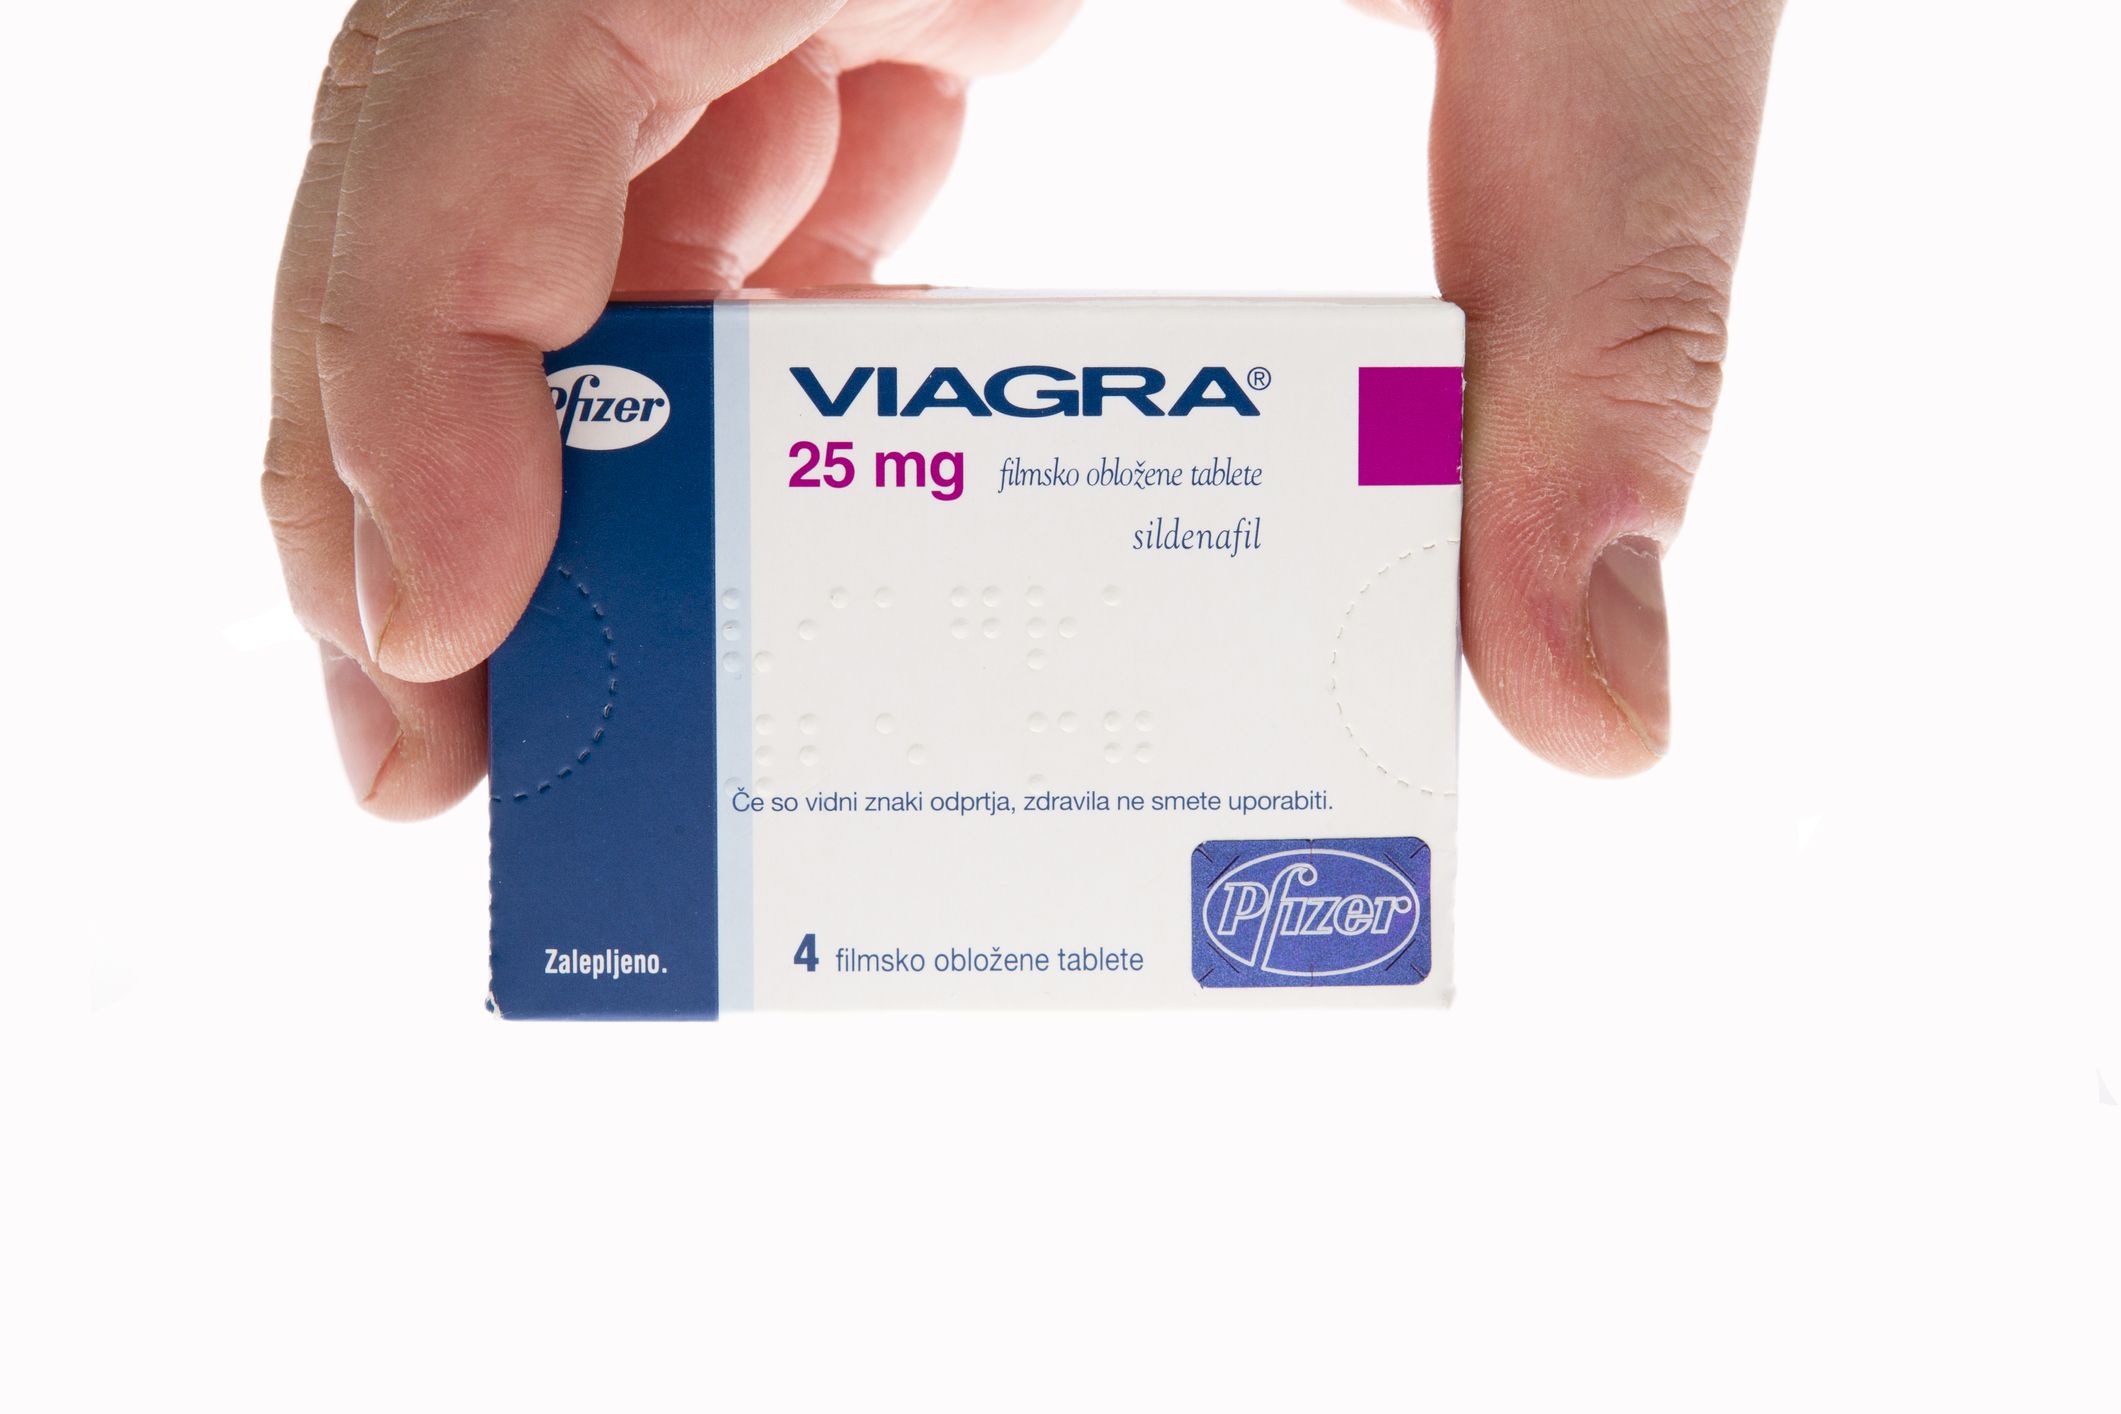 magas vérnyomás esetén Viagra-t szed